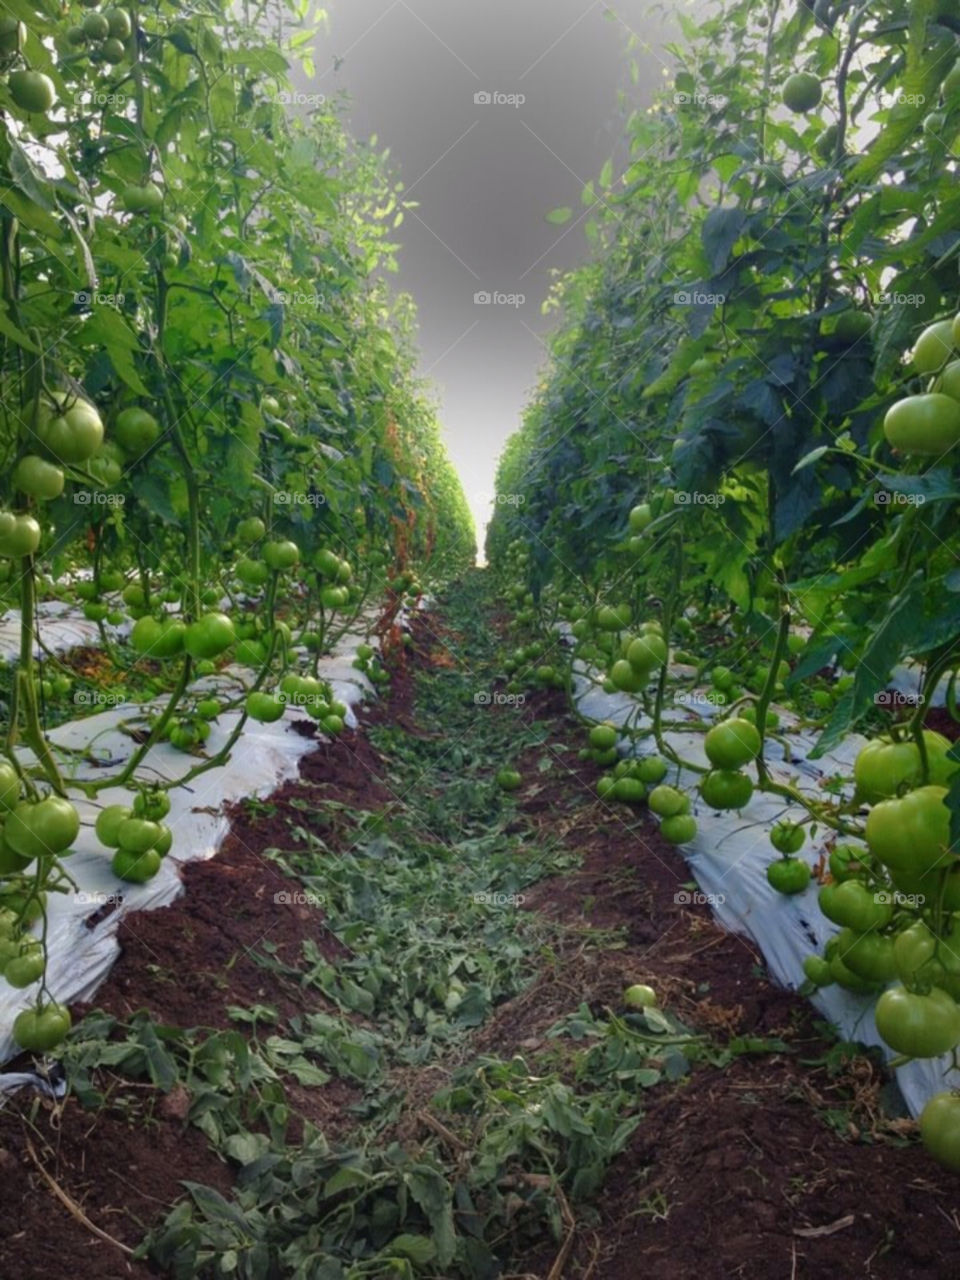 Tomatoe Field